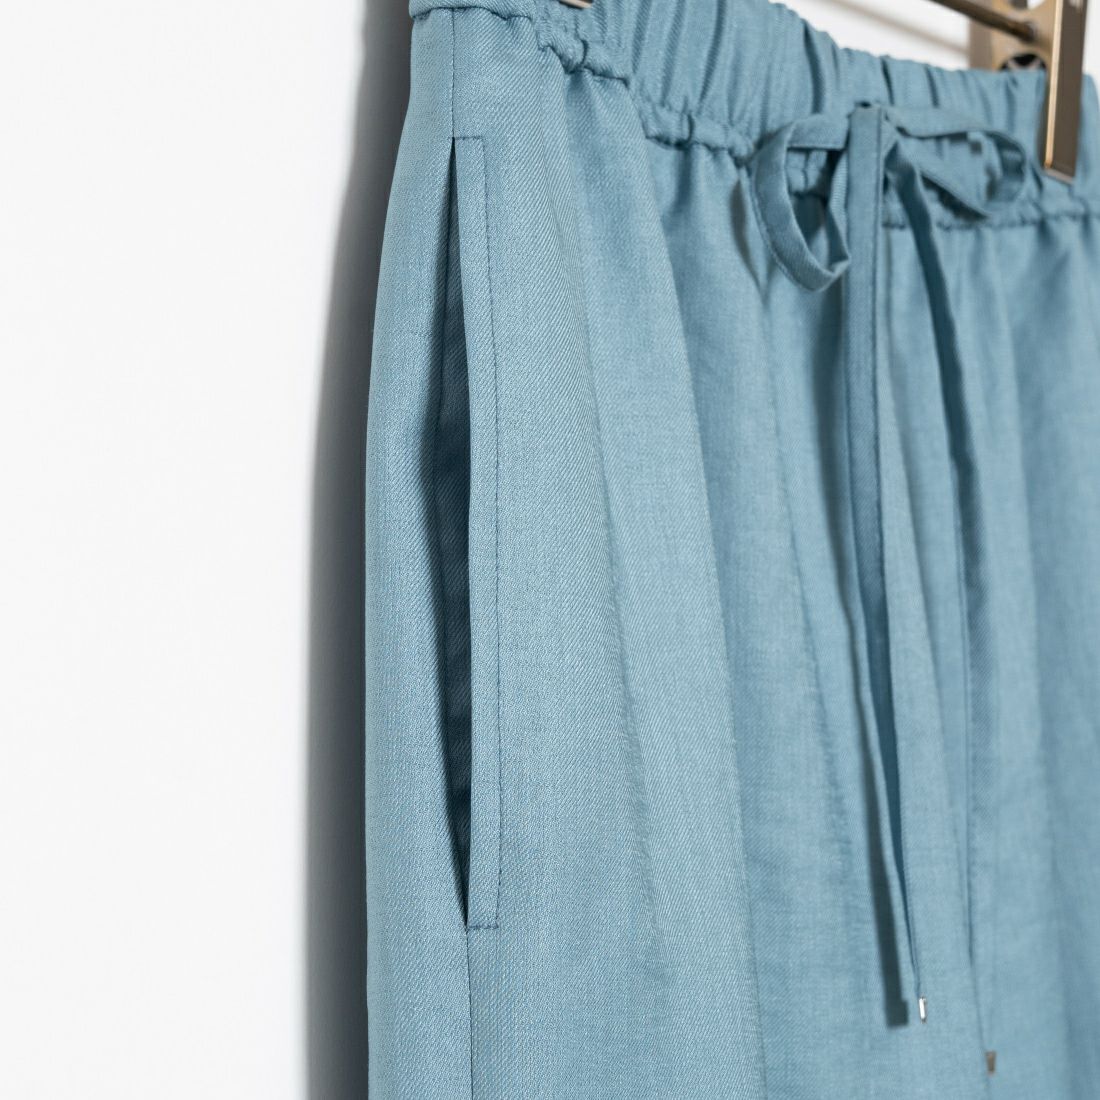 Jeans Factory Clothes [ジーンズファクトリークローズ] 杢調タンブラーツイルワイドパンツ [J-4402] 610 ﾌﾞﾙｰ